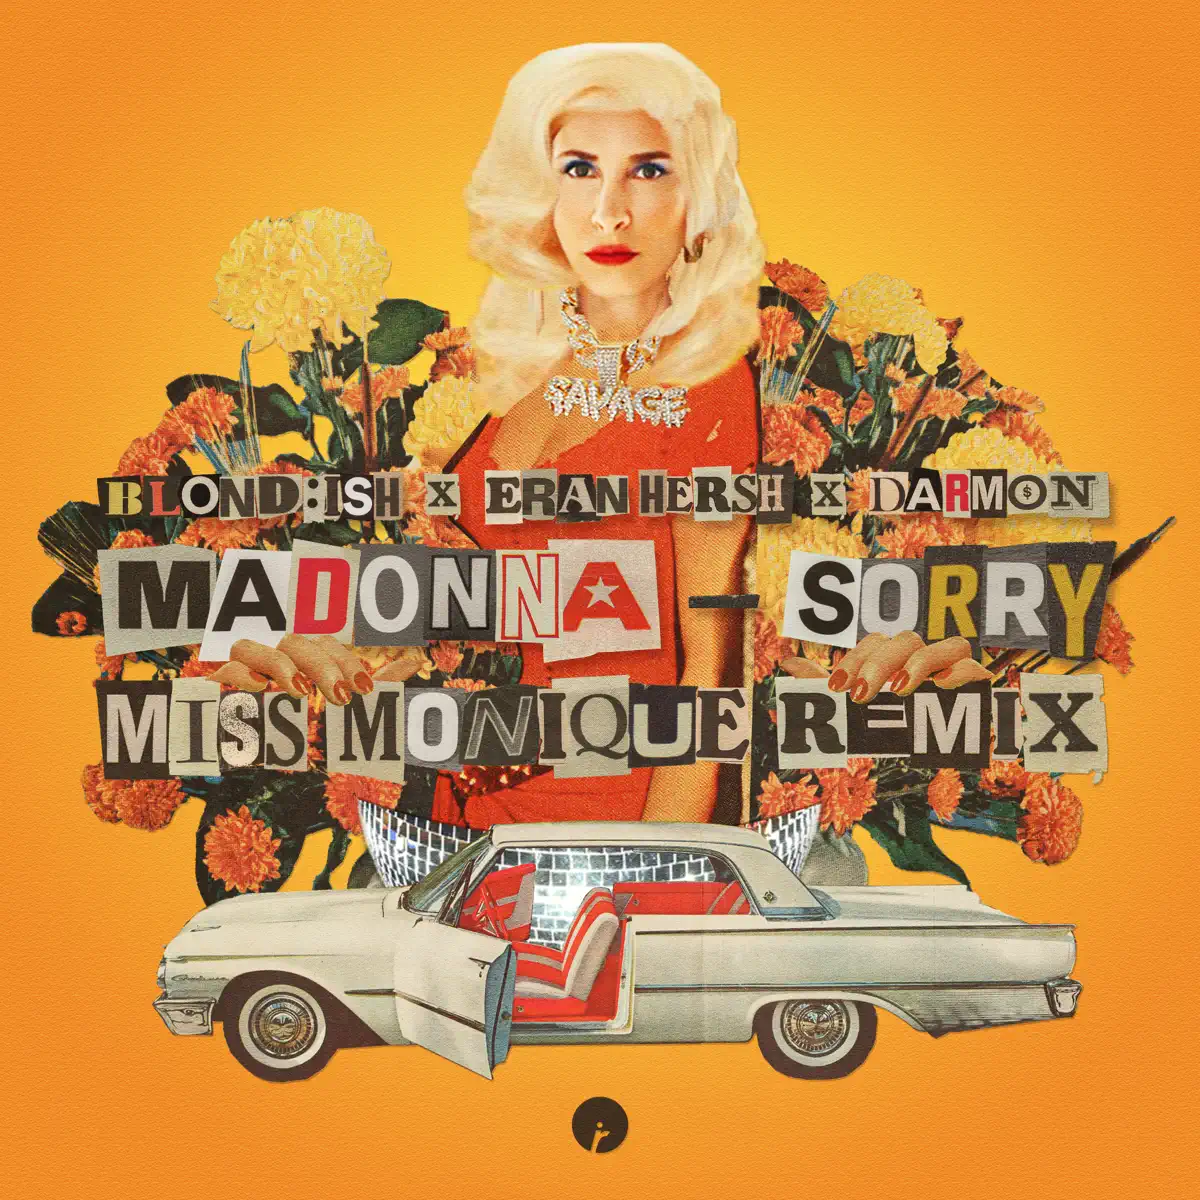 BLONDISH, Madonna & Miss Monique - Sorry (feat. Eran Hersh & Darmon) [Miss Monique Remix] - Single (2023) [iTunes Plus AAC M4A]-新房子